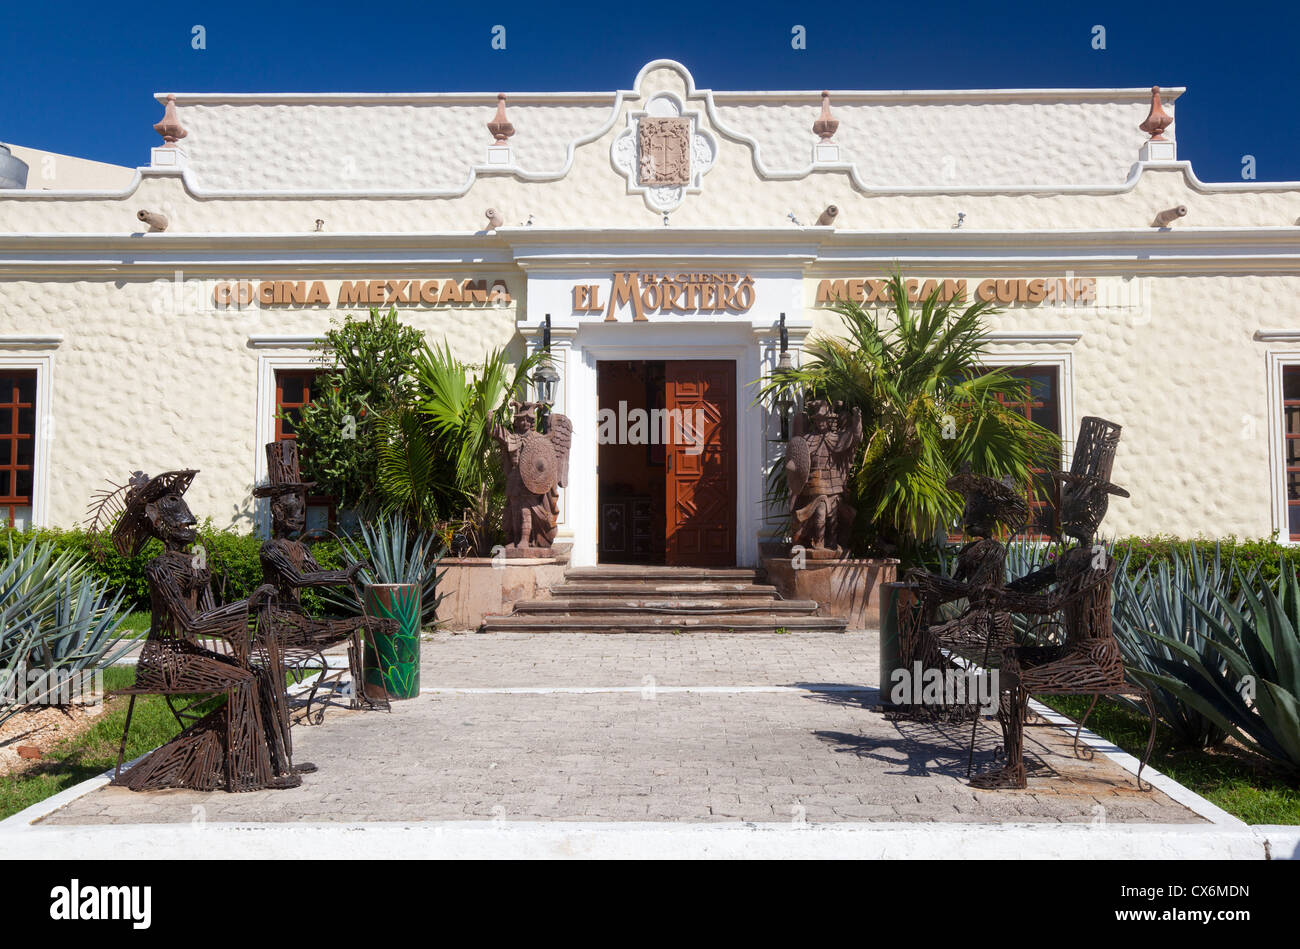 Hacienda El mortero, restaurante de comida mexicana, Cancún, México Foto de stock